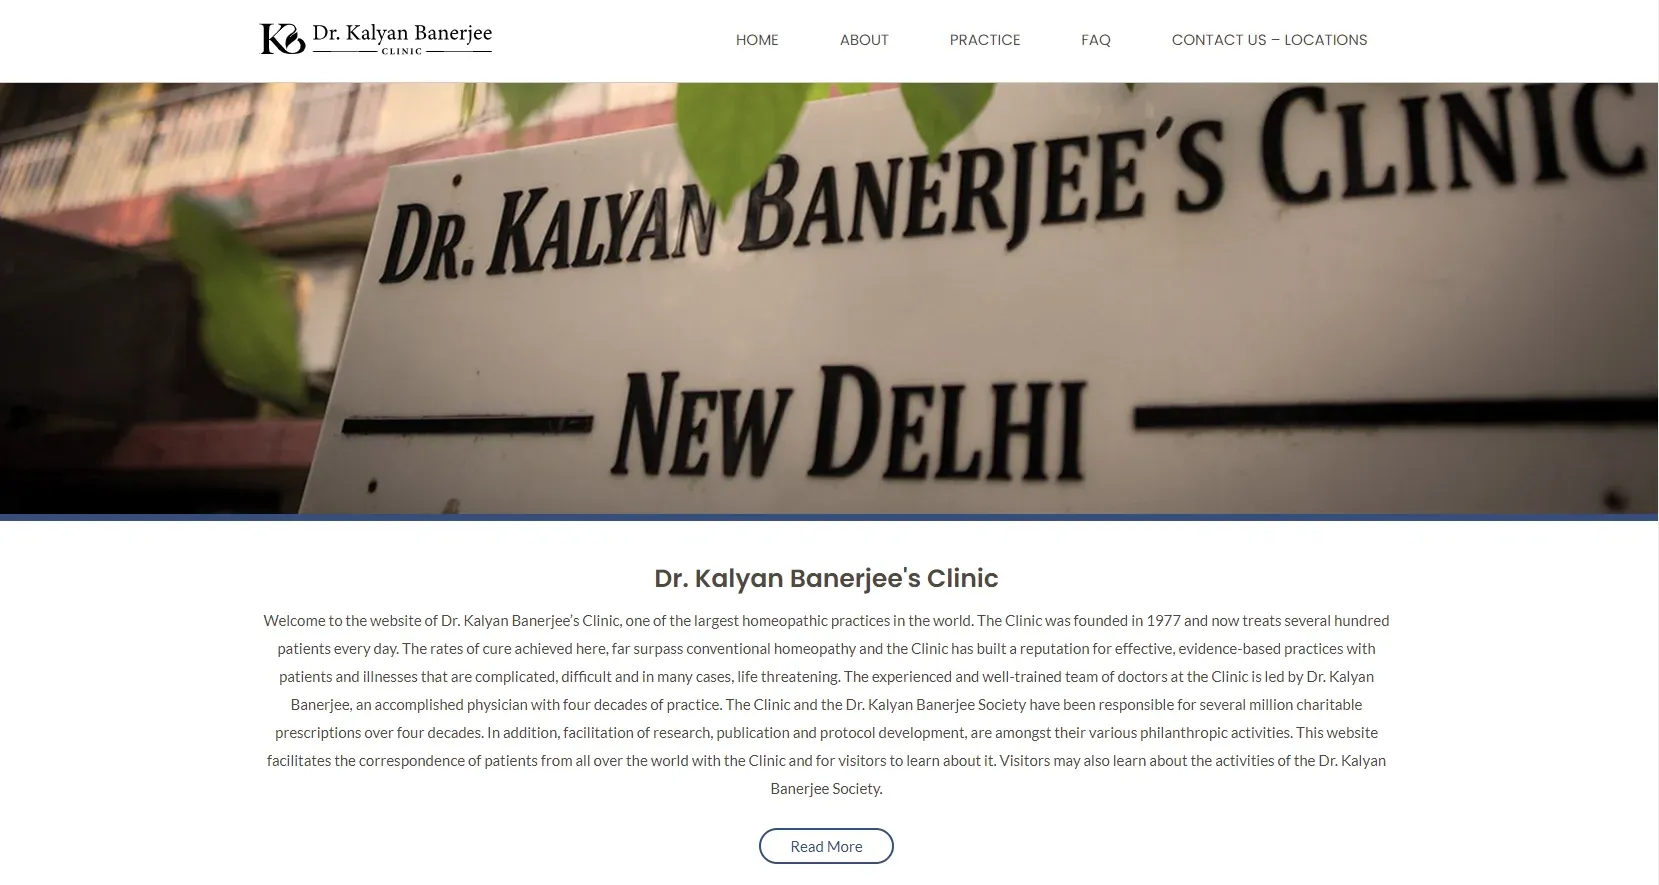  Dr. Kalyan Banerjee Clinic, Gurgaon